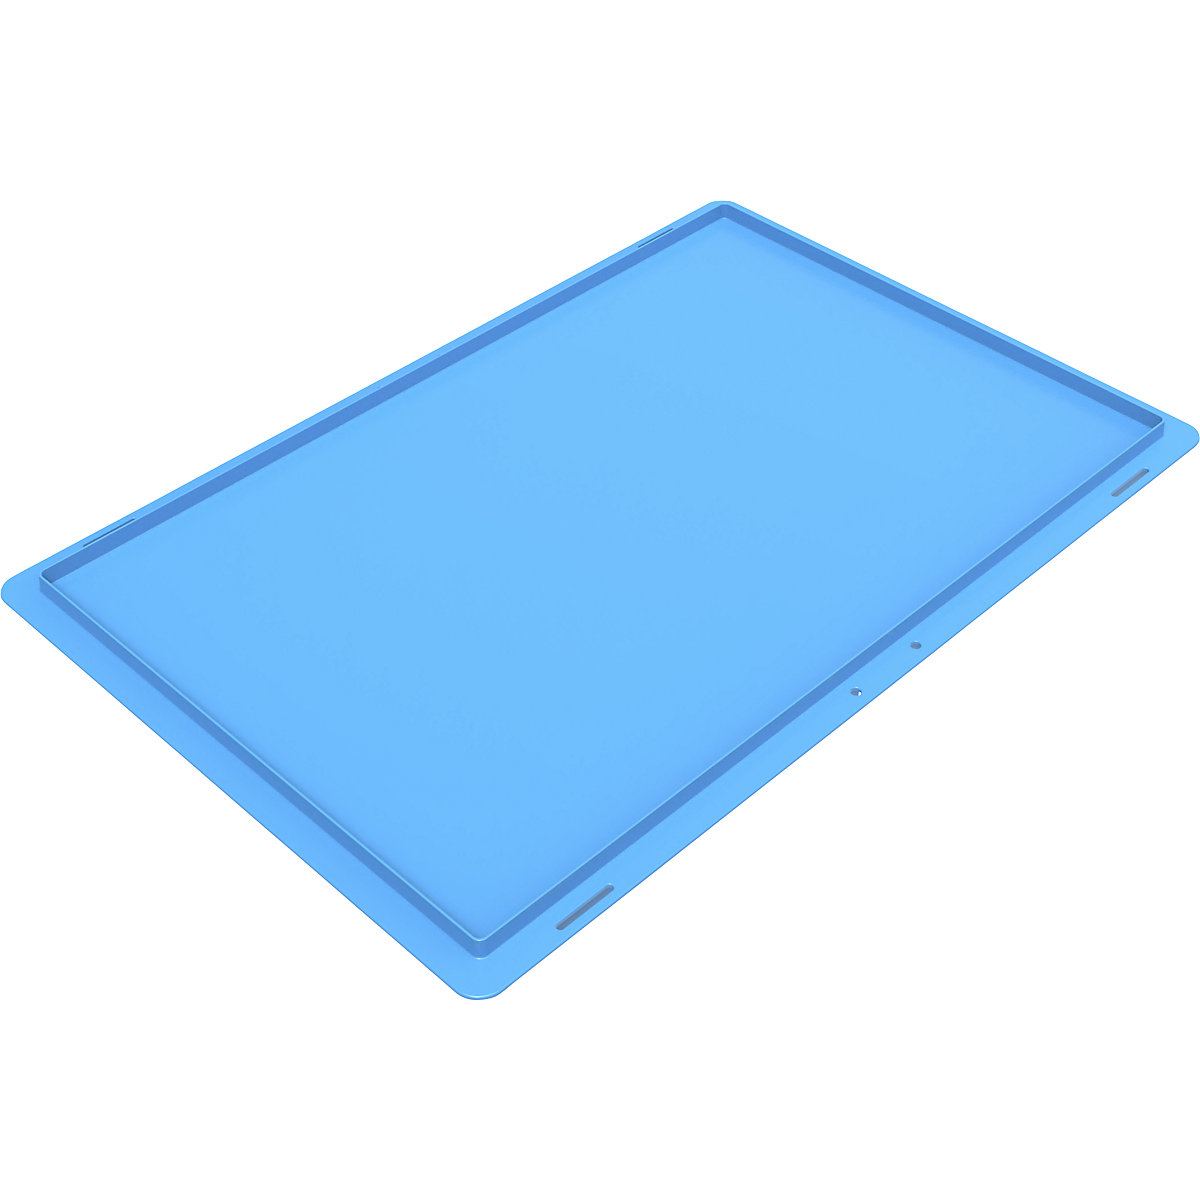 Ráhelyezhető fedél összehajtható dobozhoz, kék színben (Termék képe 3)-2